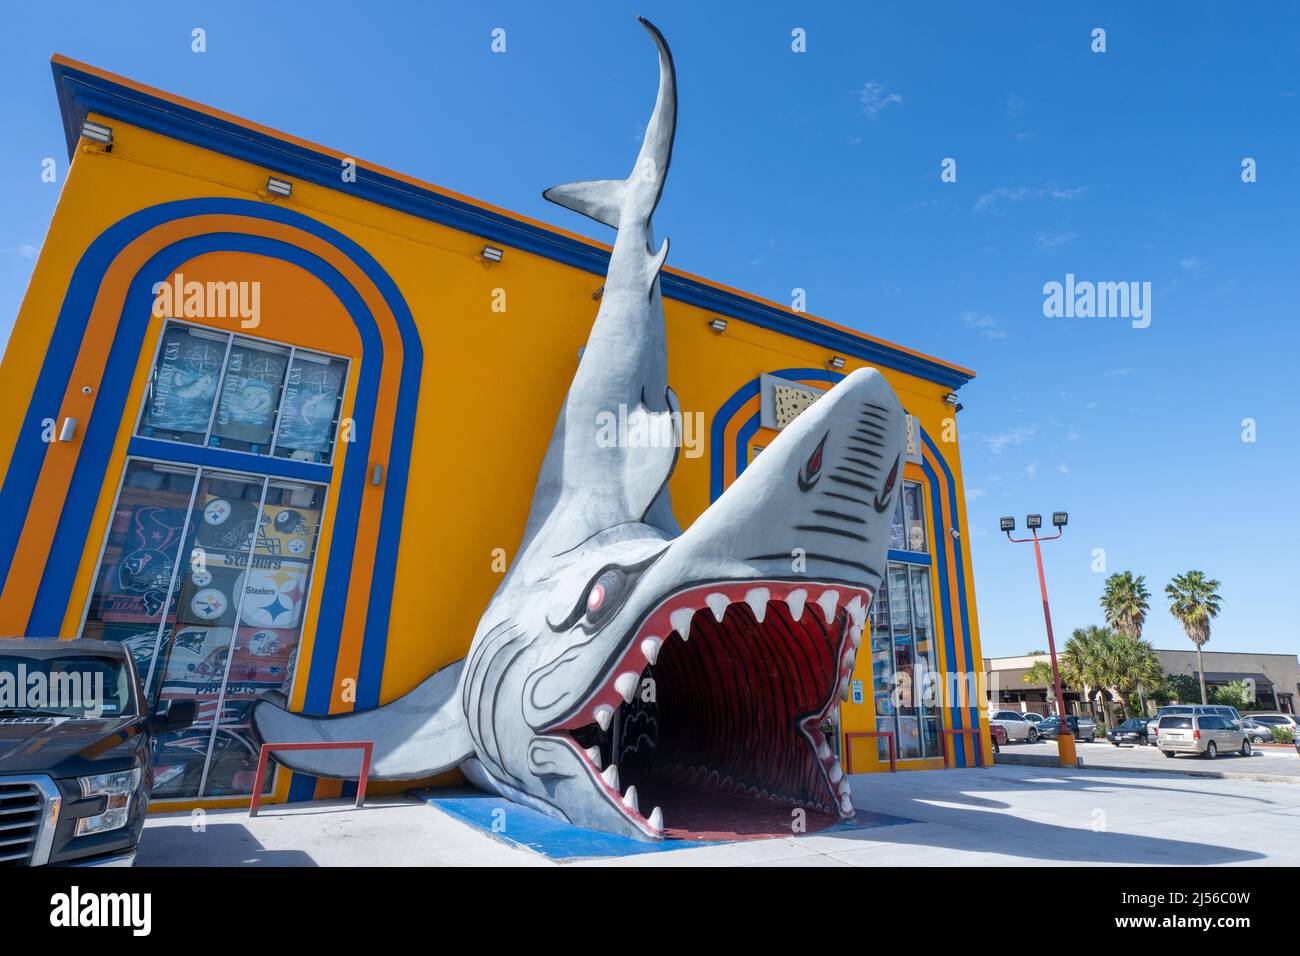 Ein Hai an der Fassade eines Touristenladens im Ferienort South Padre Island, Texas. Der Enry geht durch den Hai-Mund. Stockfoto